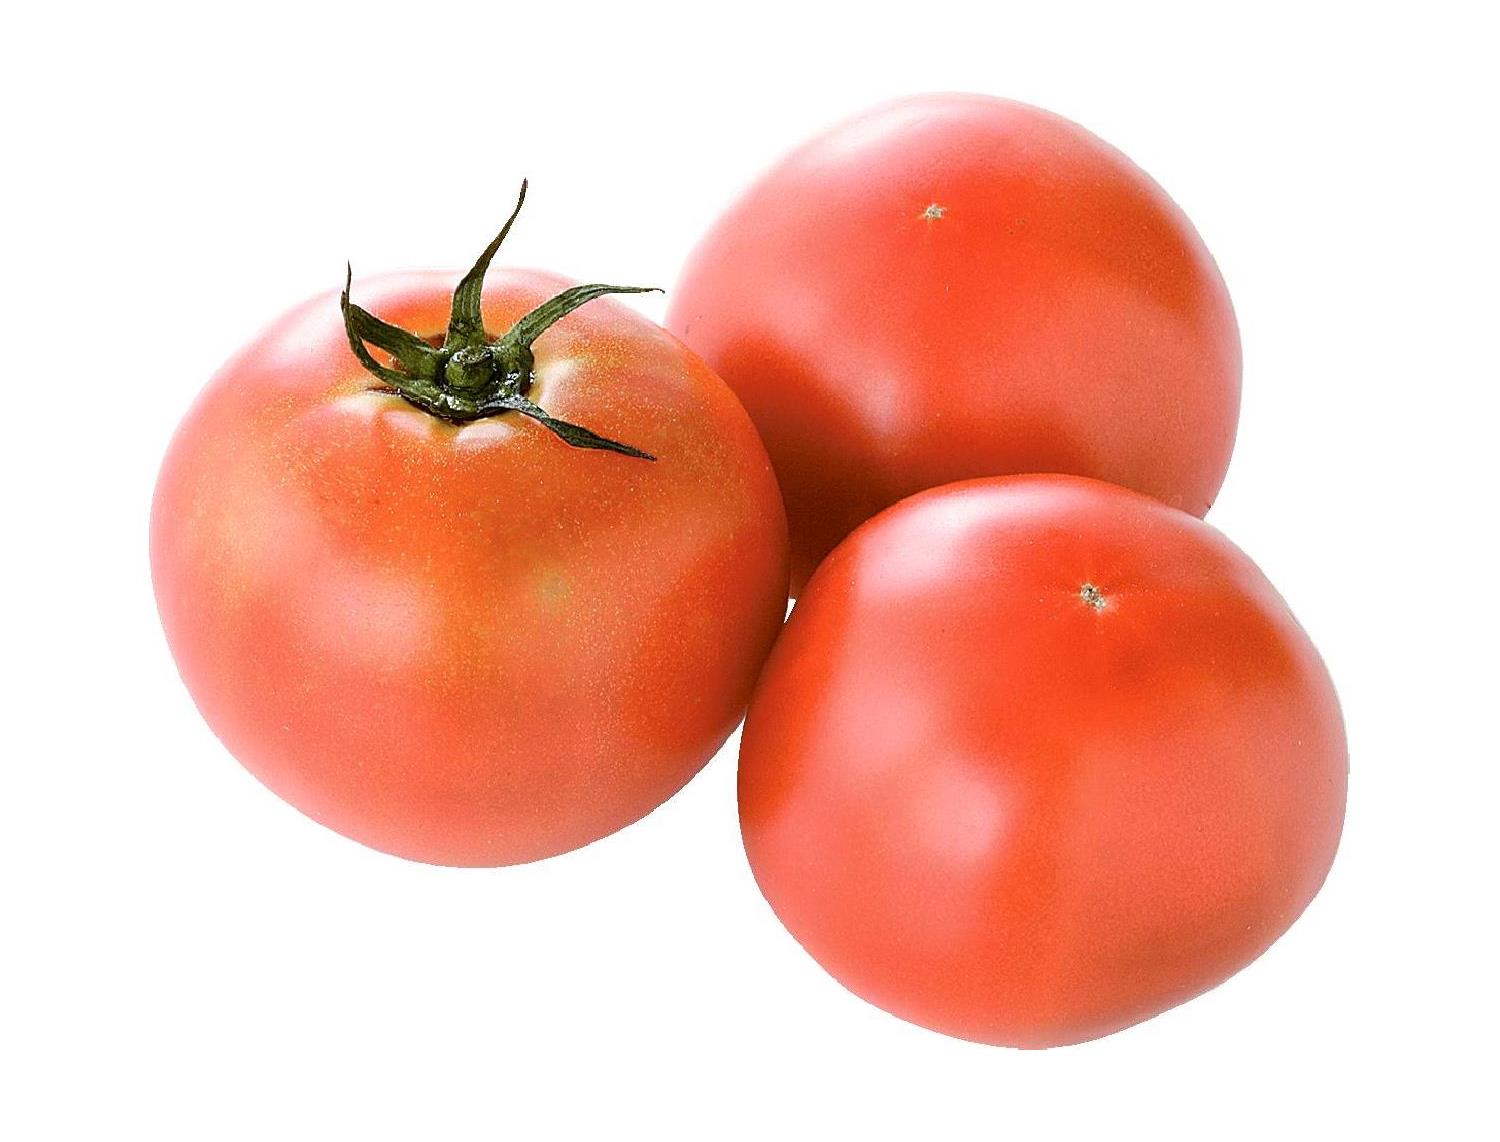 【ふぞろい】産直トマト